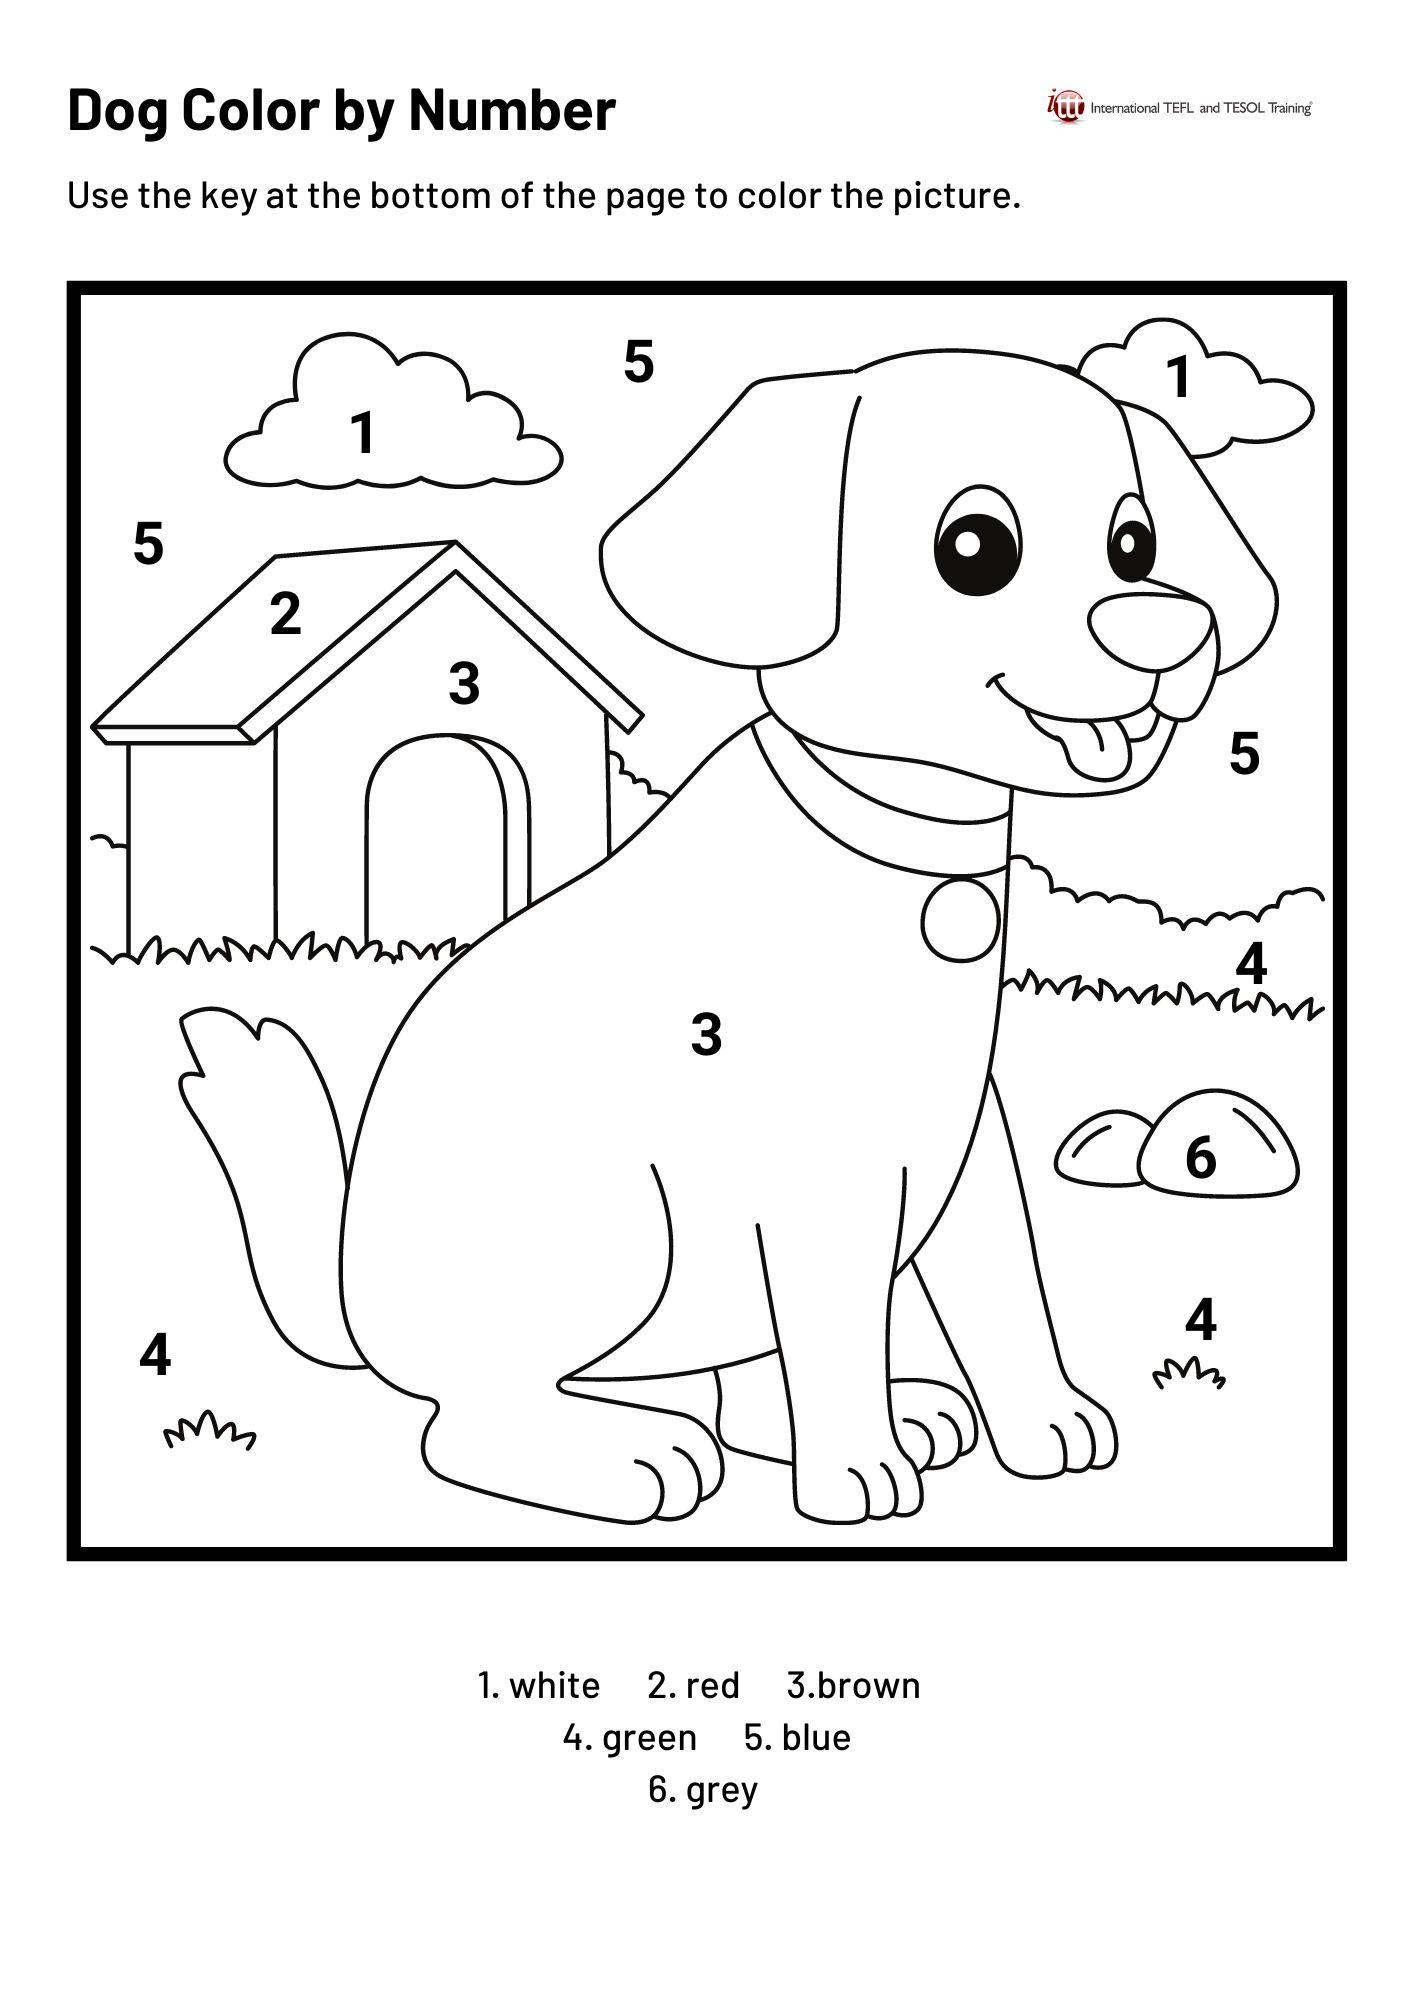 Grammar Corner Dog Color By Number